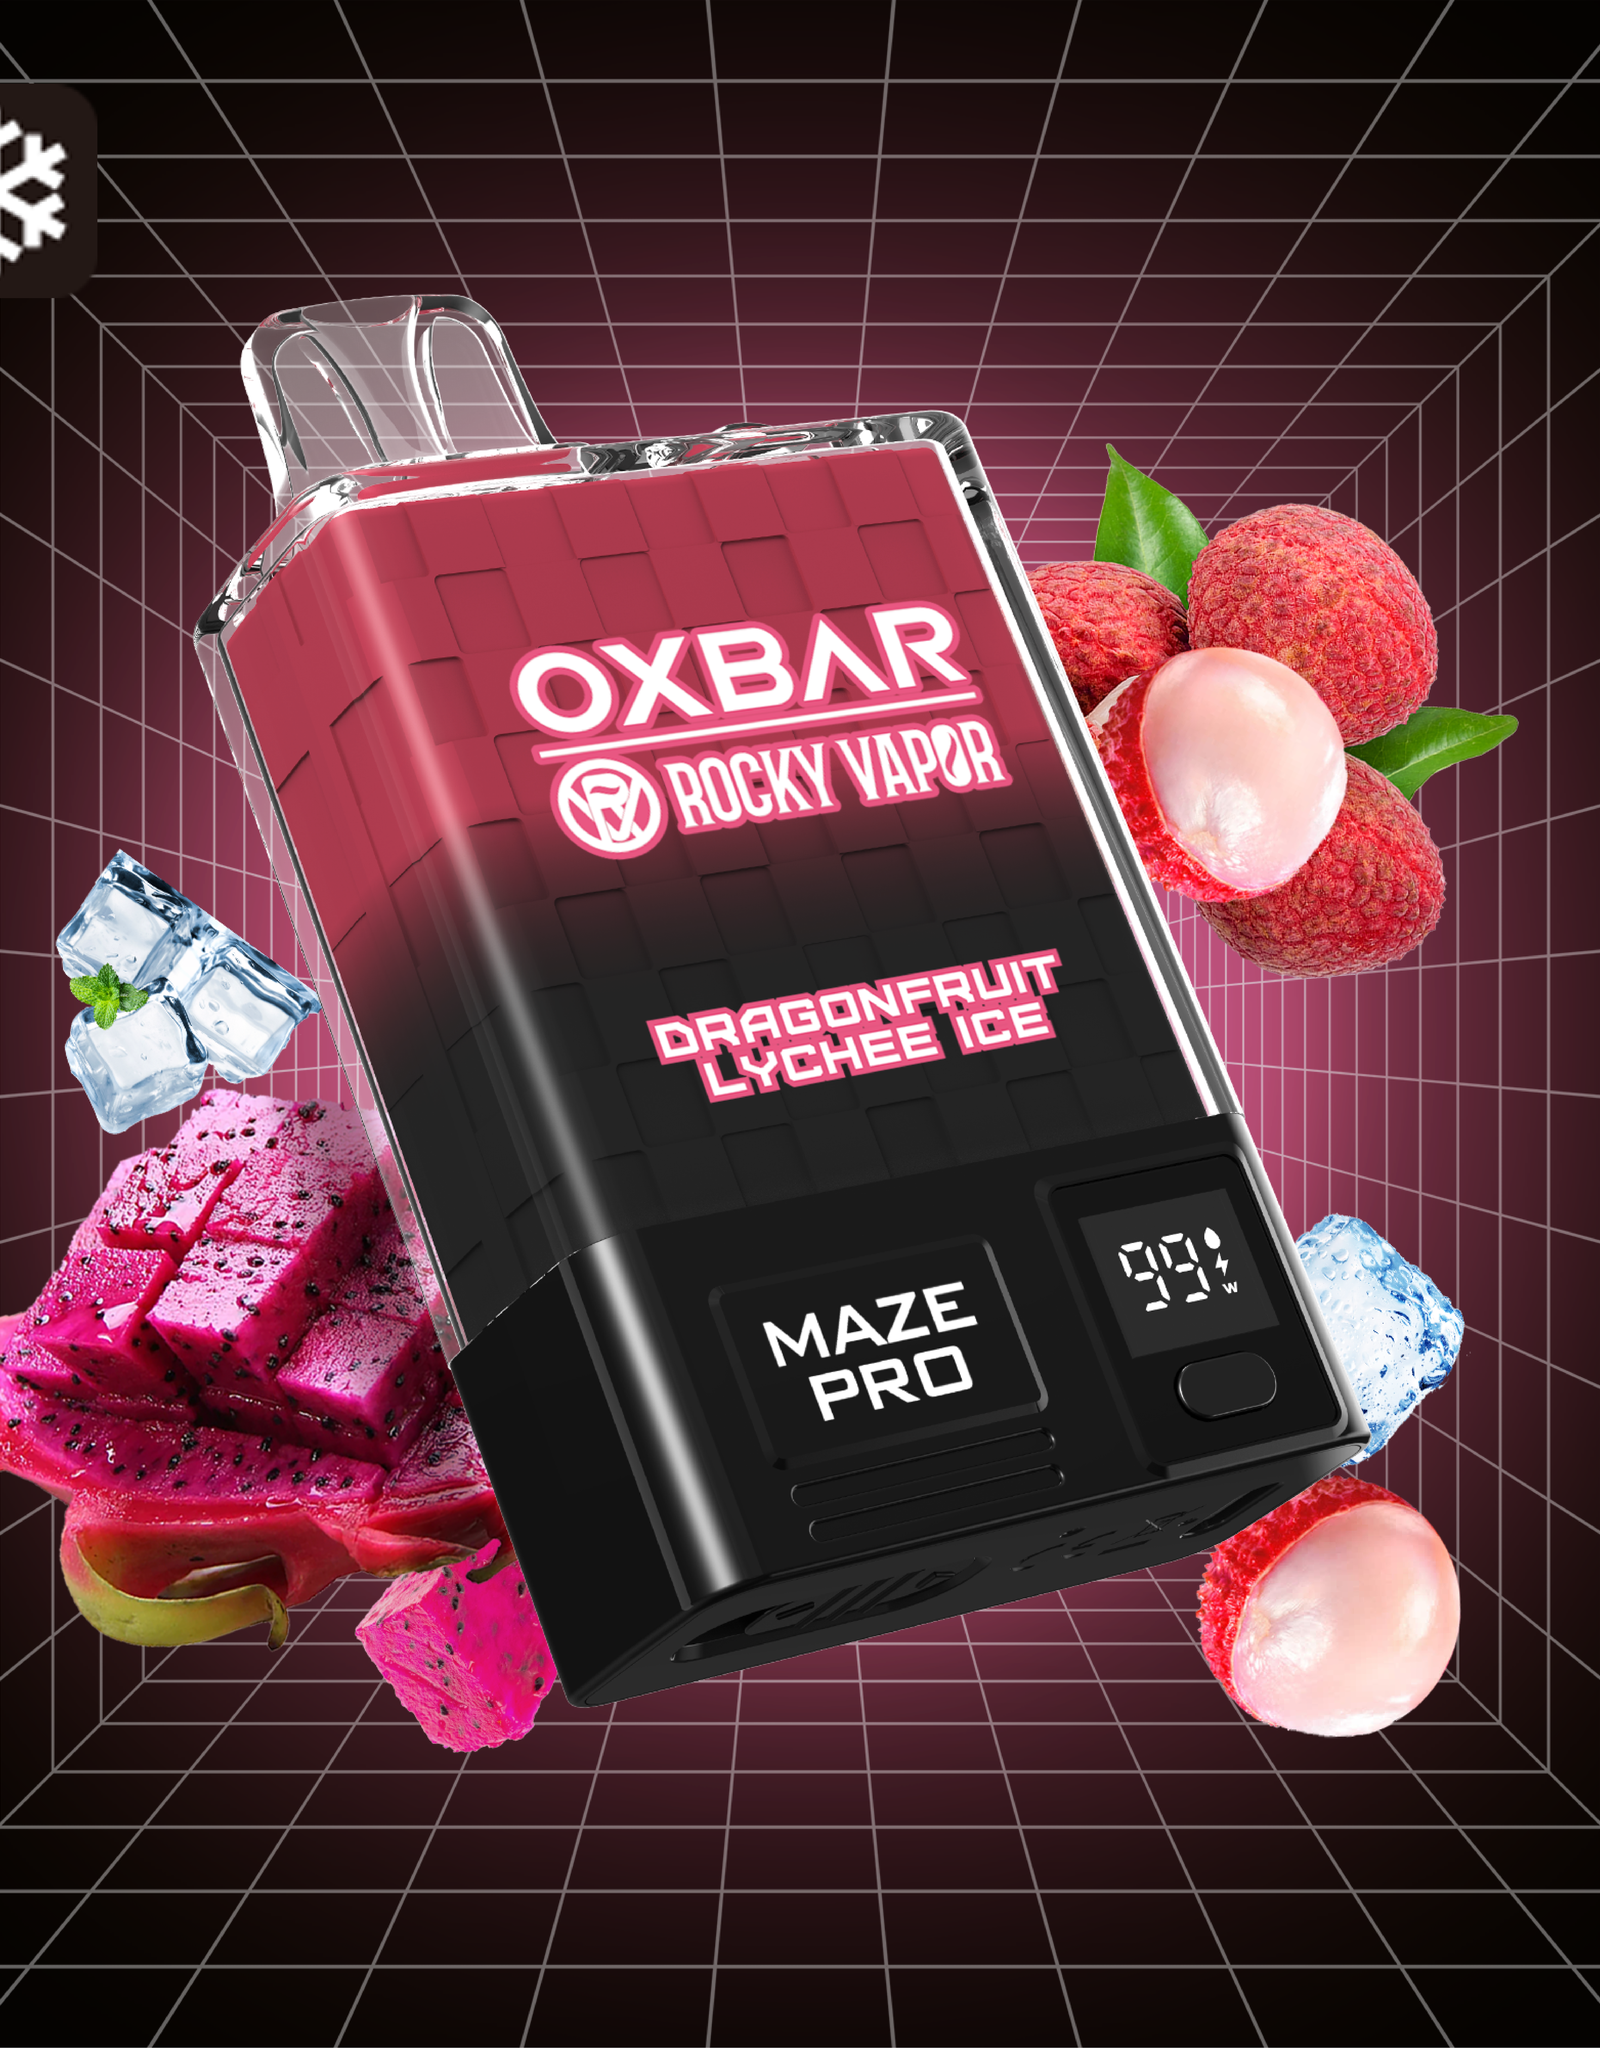 Rocky Vapor Oxbar Maze Pro